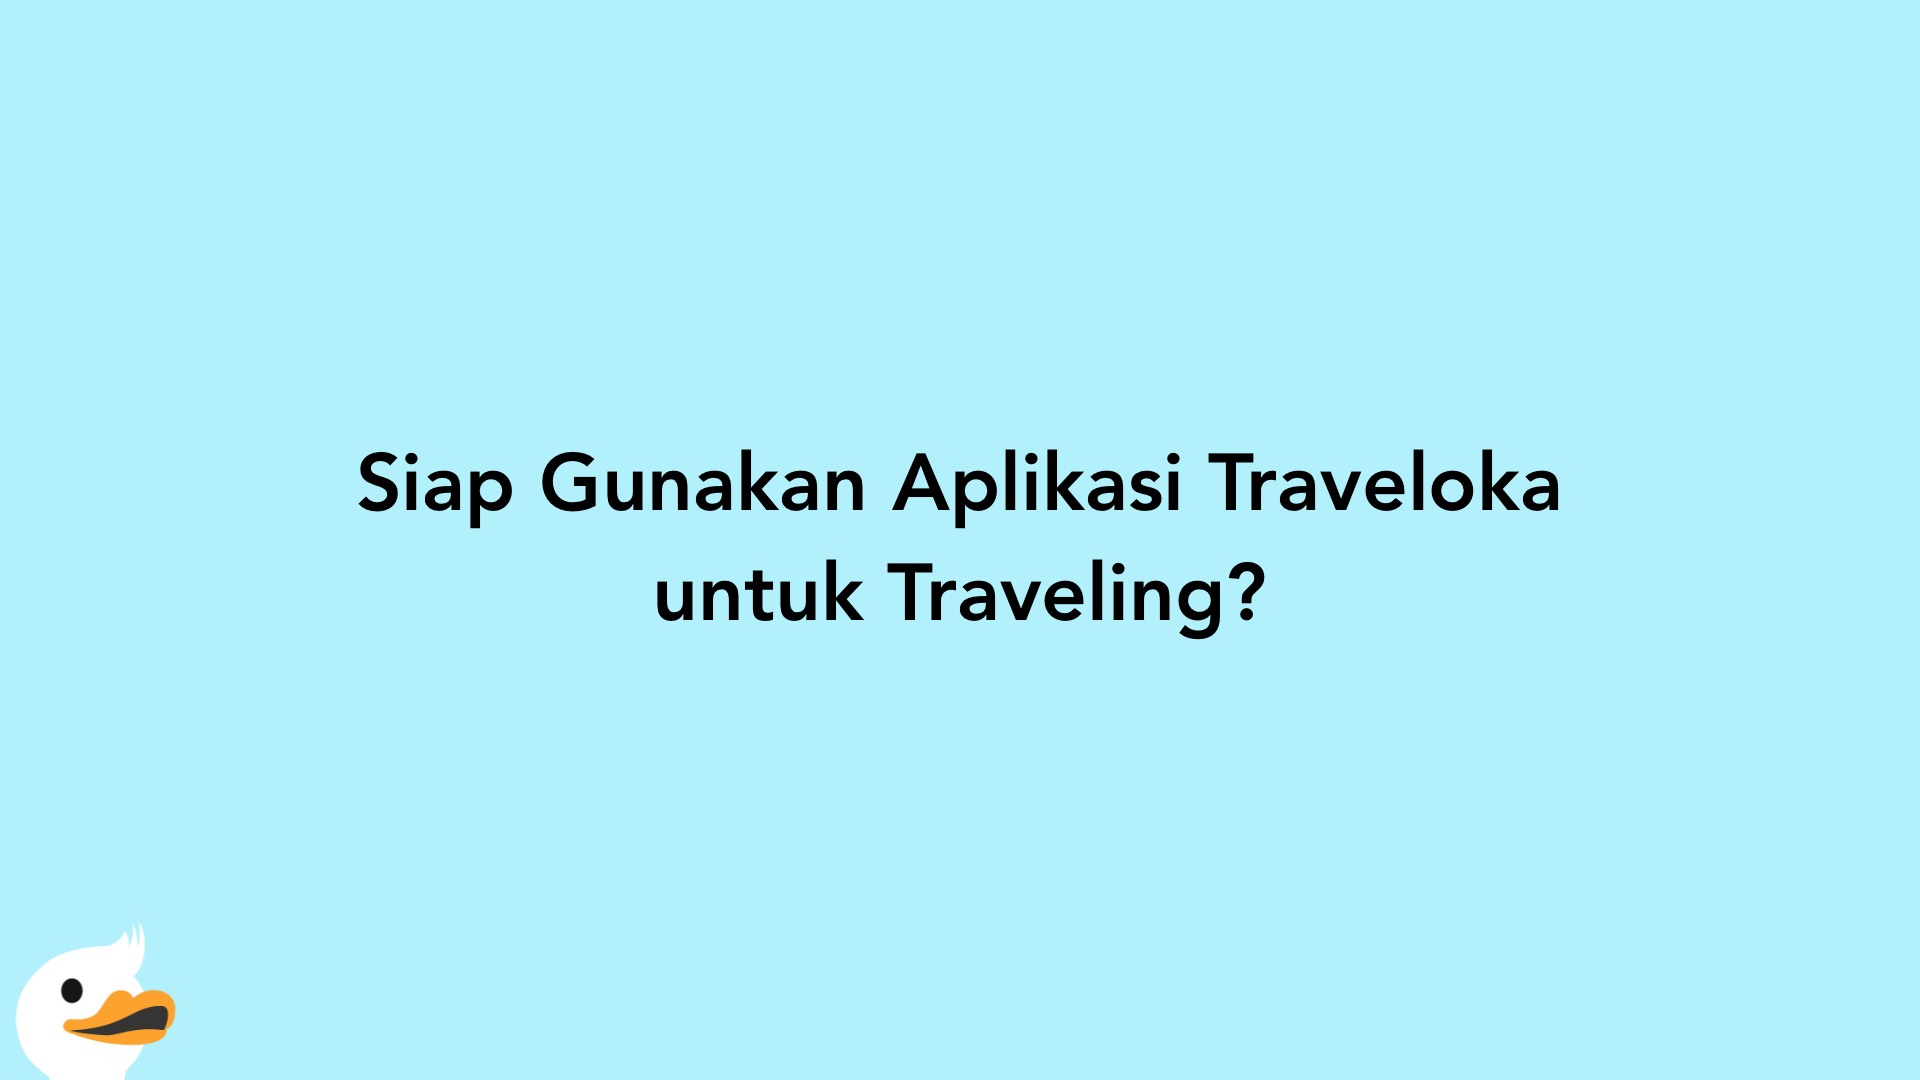 Siap Gunakan Aplikasi Traveloka untuk Traveling?